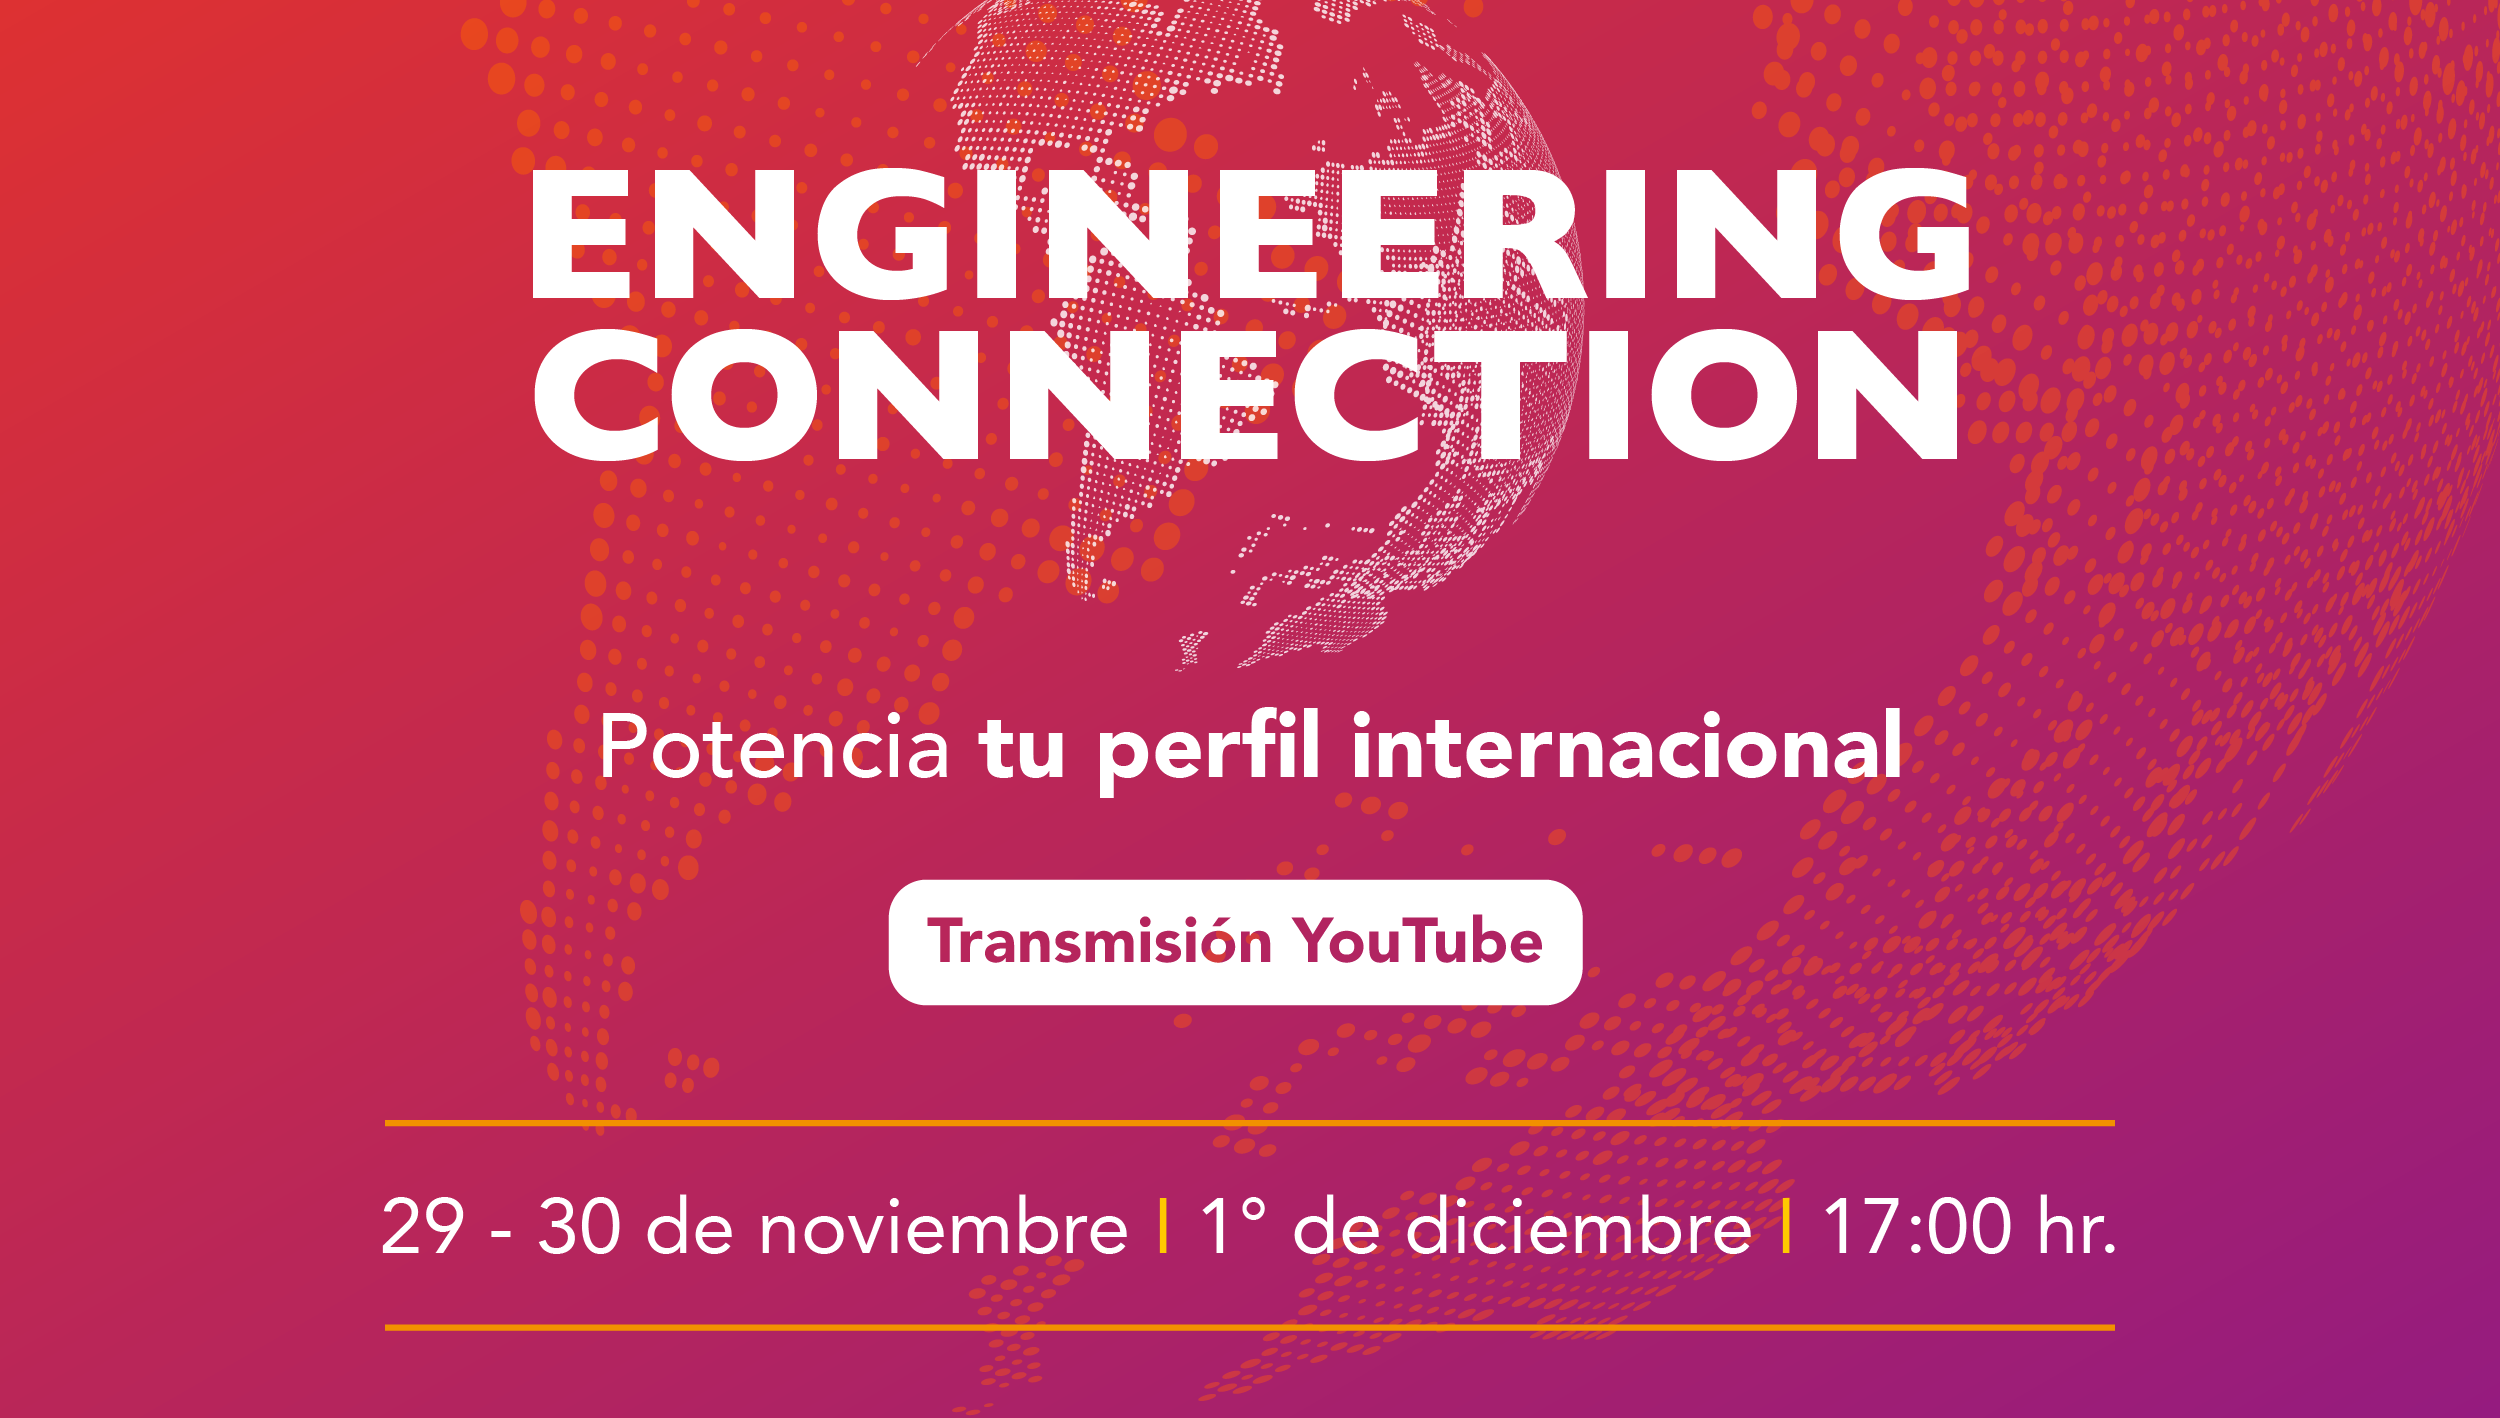 Engineering Connection: Potencia tu perfil internacional